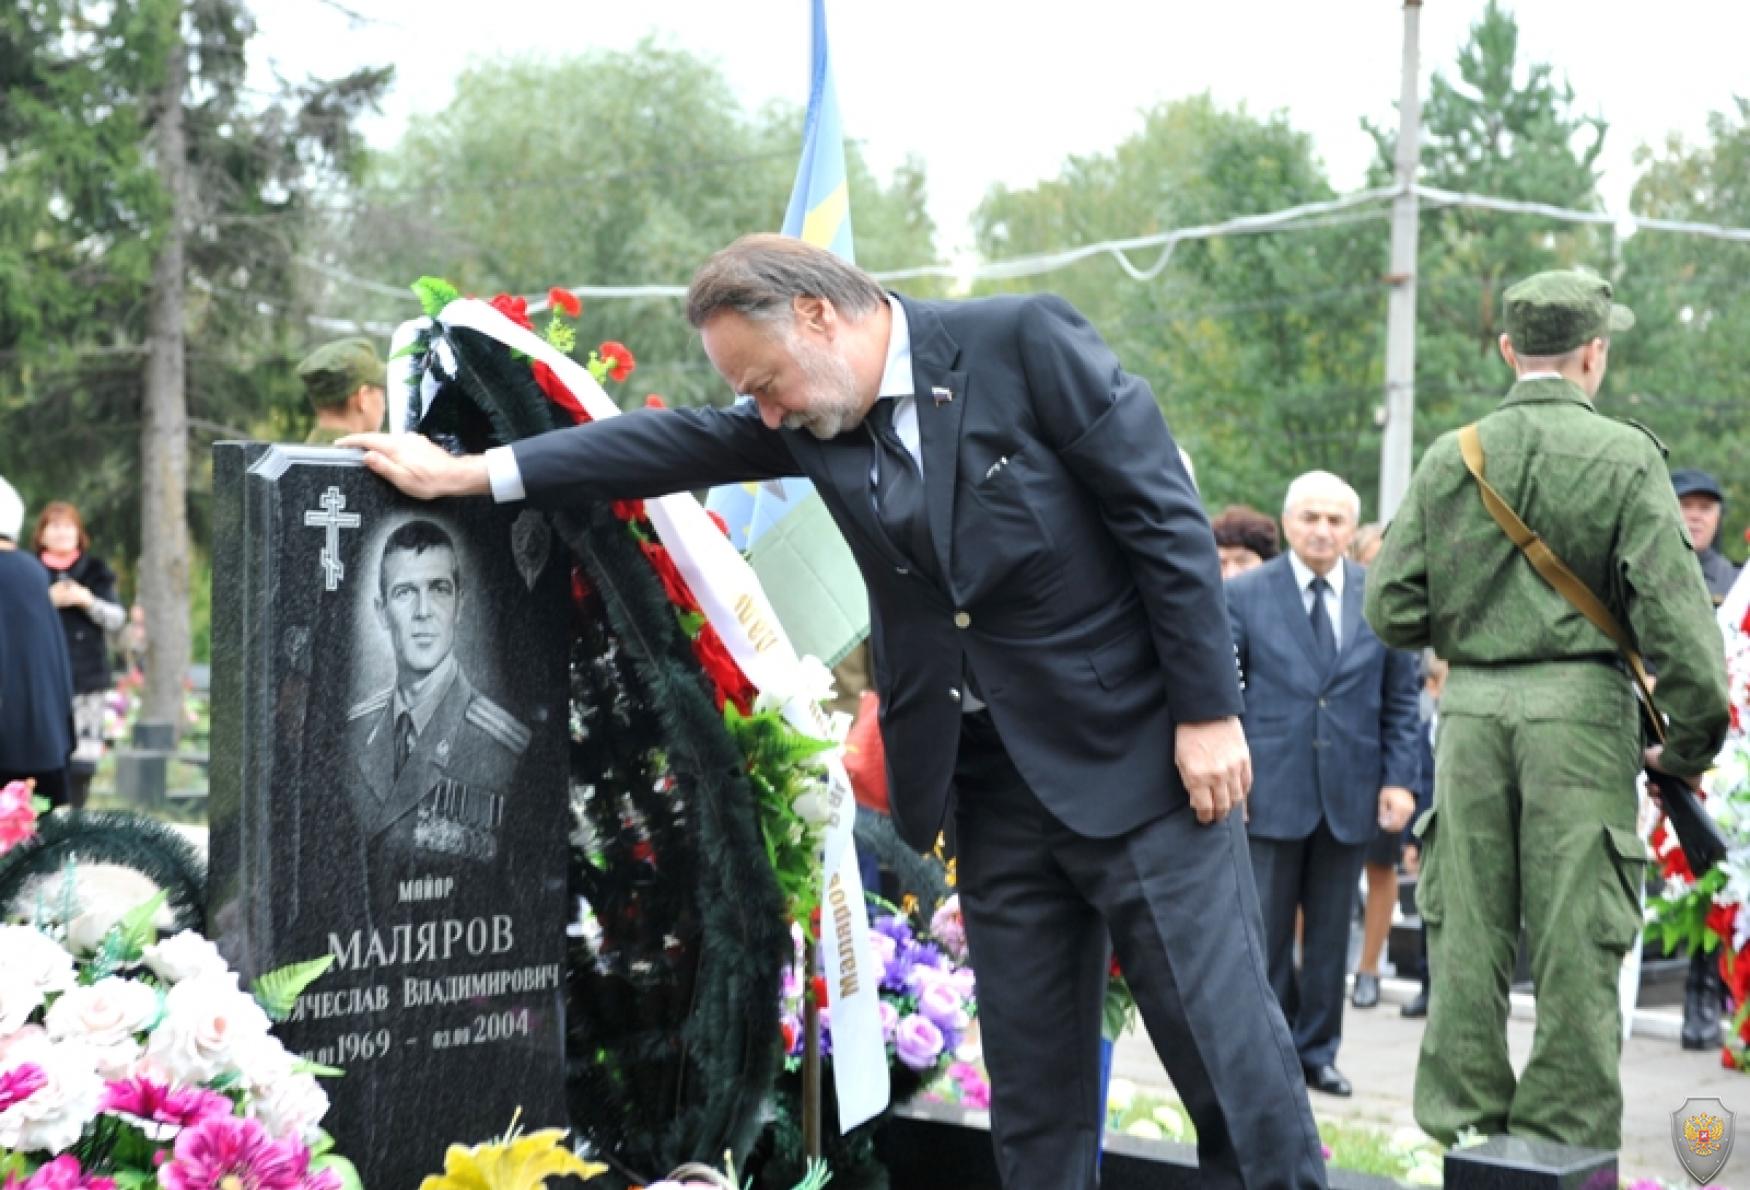 Мероприятия посвящённые дню памяти жертв терроризма. Москва. 3 сентября 2015 года